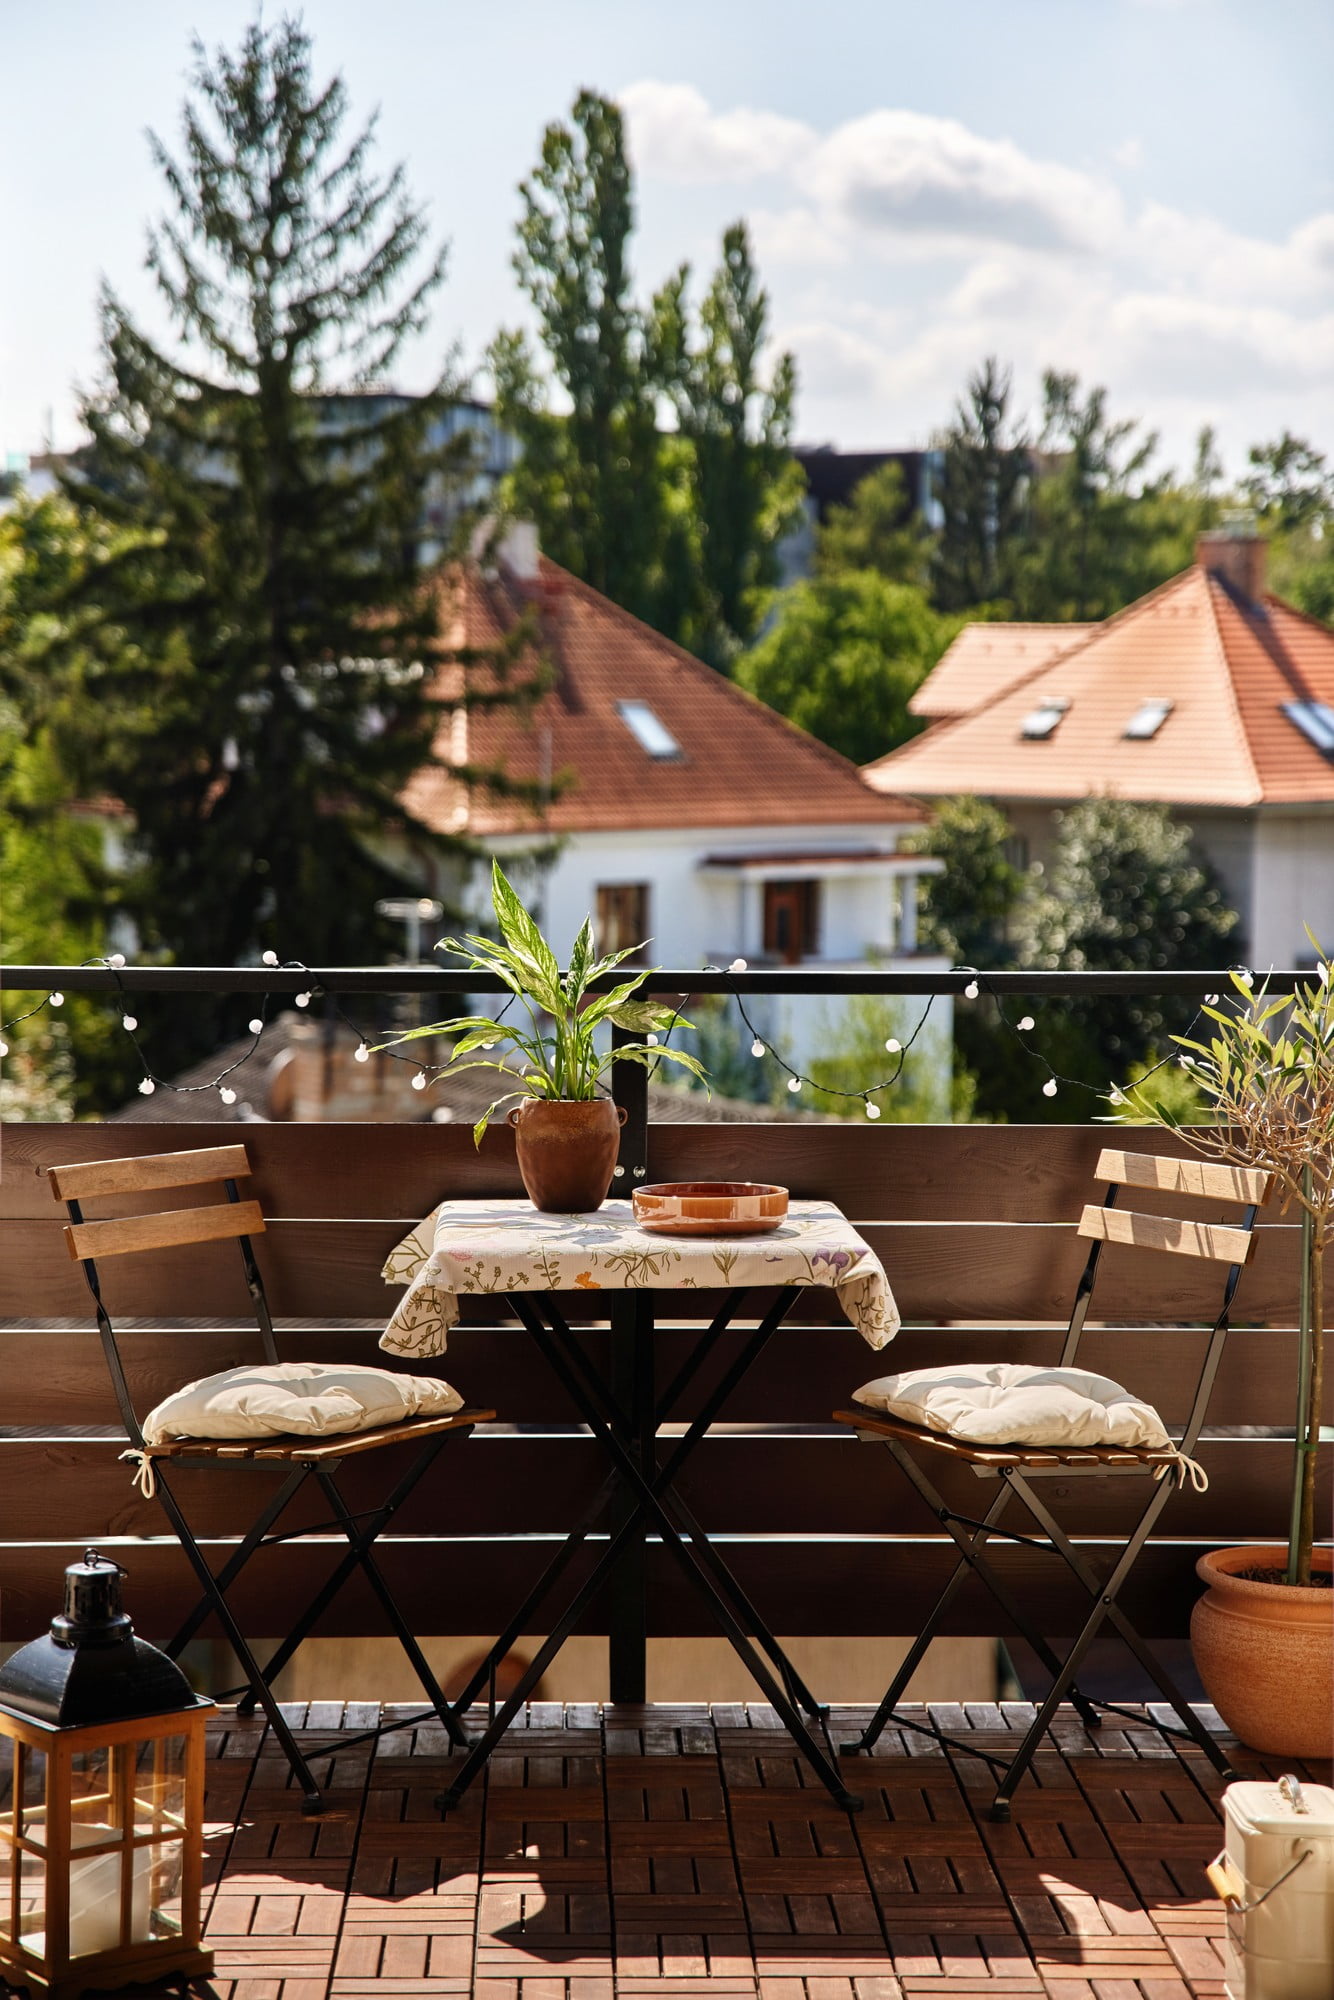 Balkons ir aprīkots ar retro galdu un saliekamiem krēsliem. Romantisko atmosfēru papildina daudzveidīgs apgaismojums.